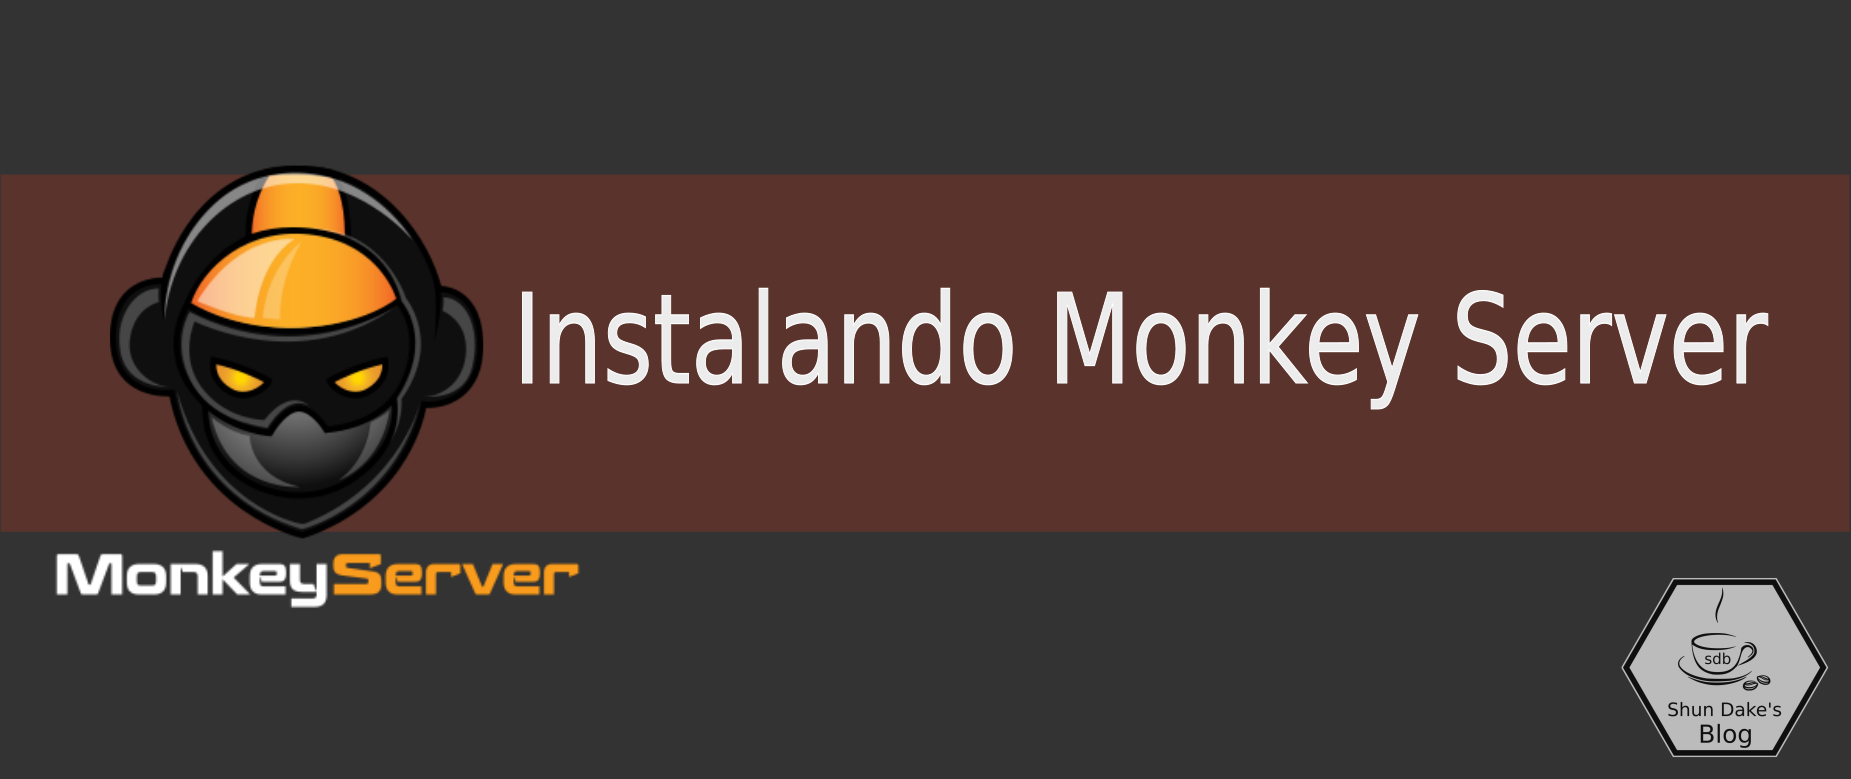 Instalando Monkey Server